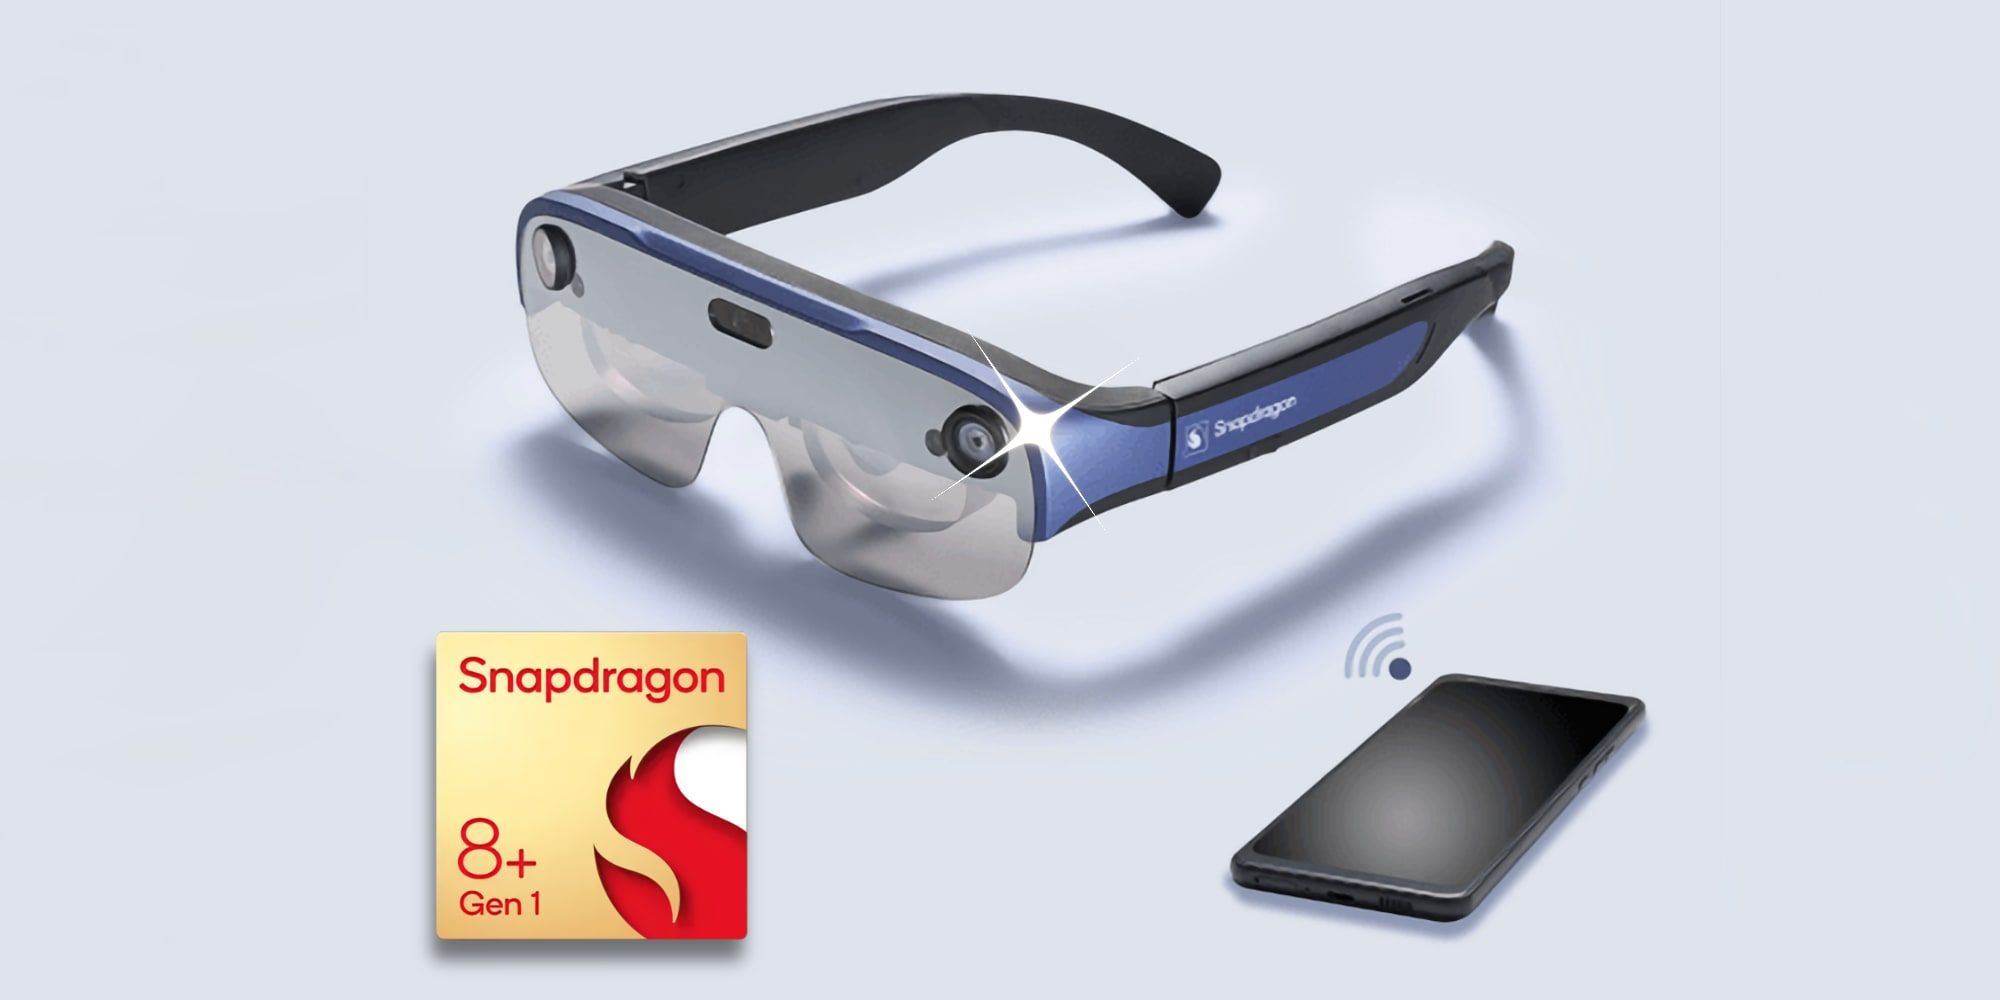 Qualcomm Snapdragon XR2 AR Glasses Reference Design